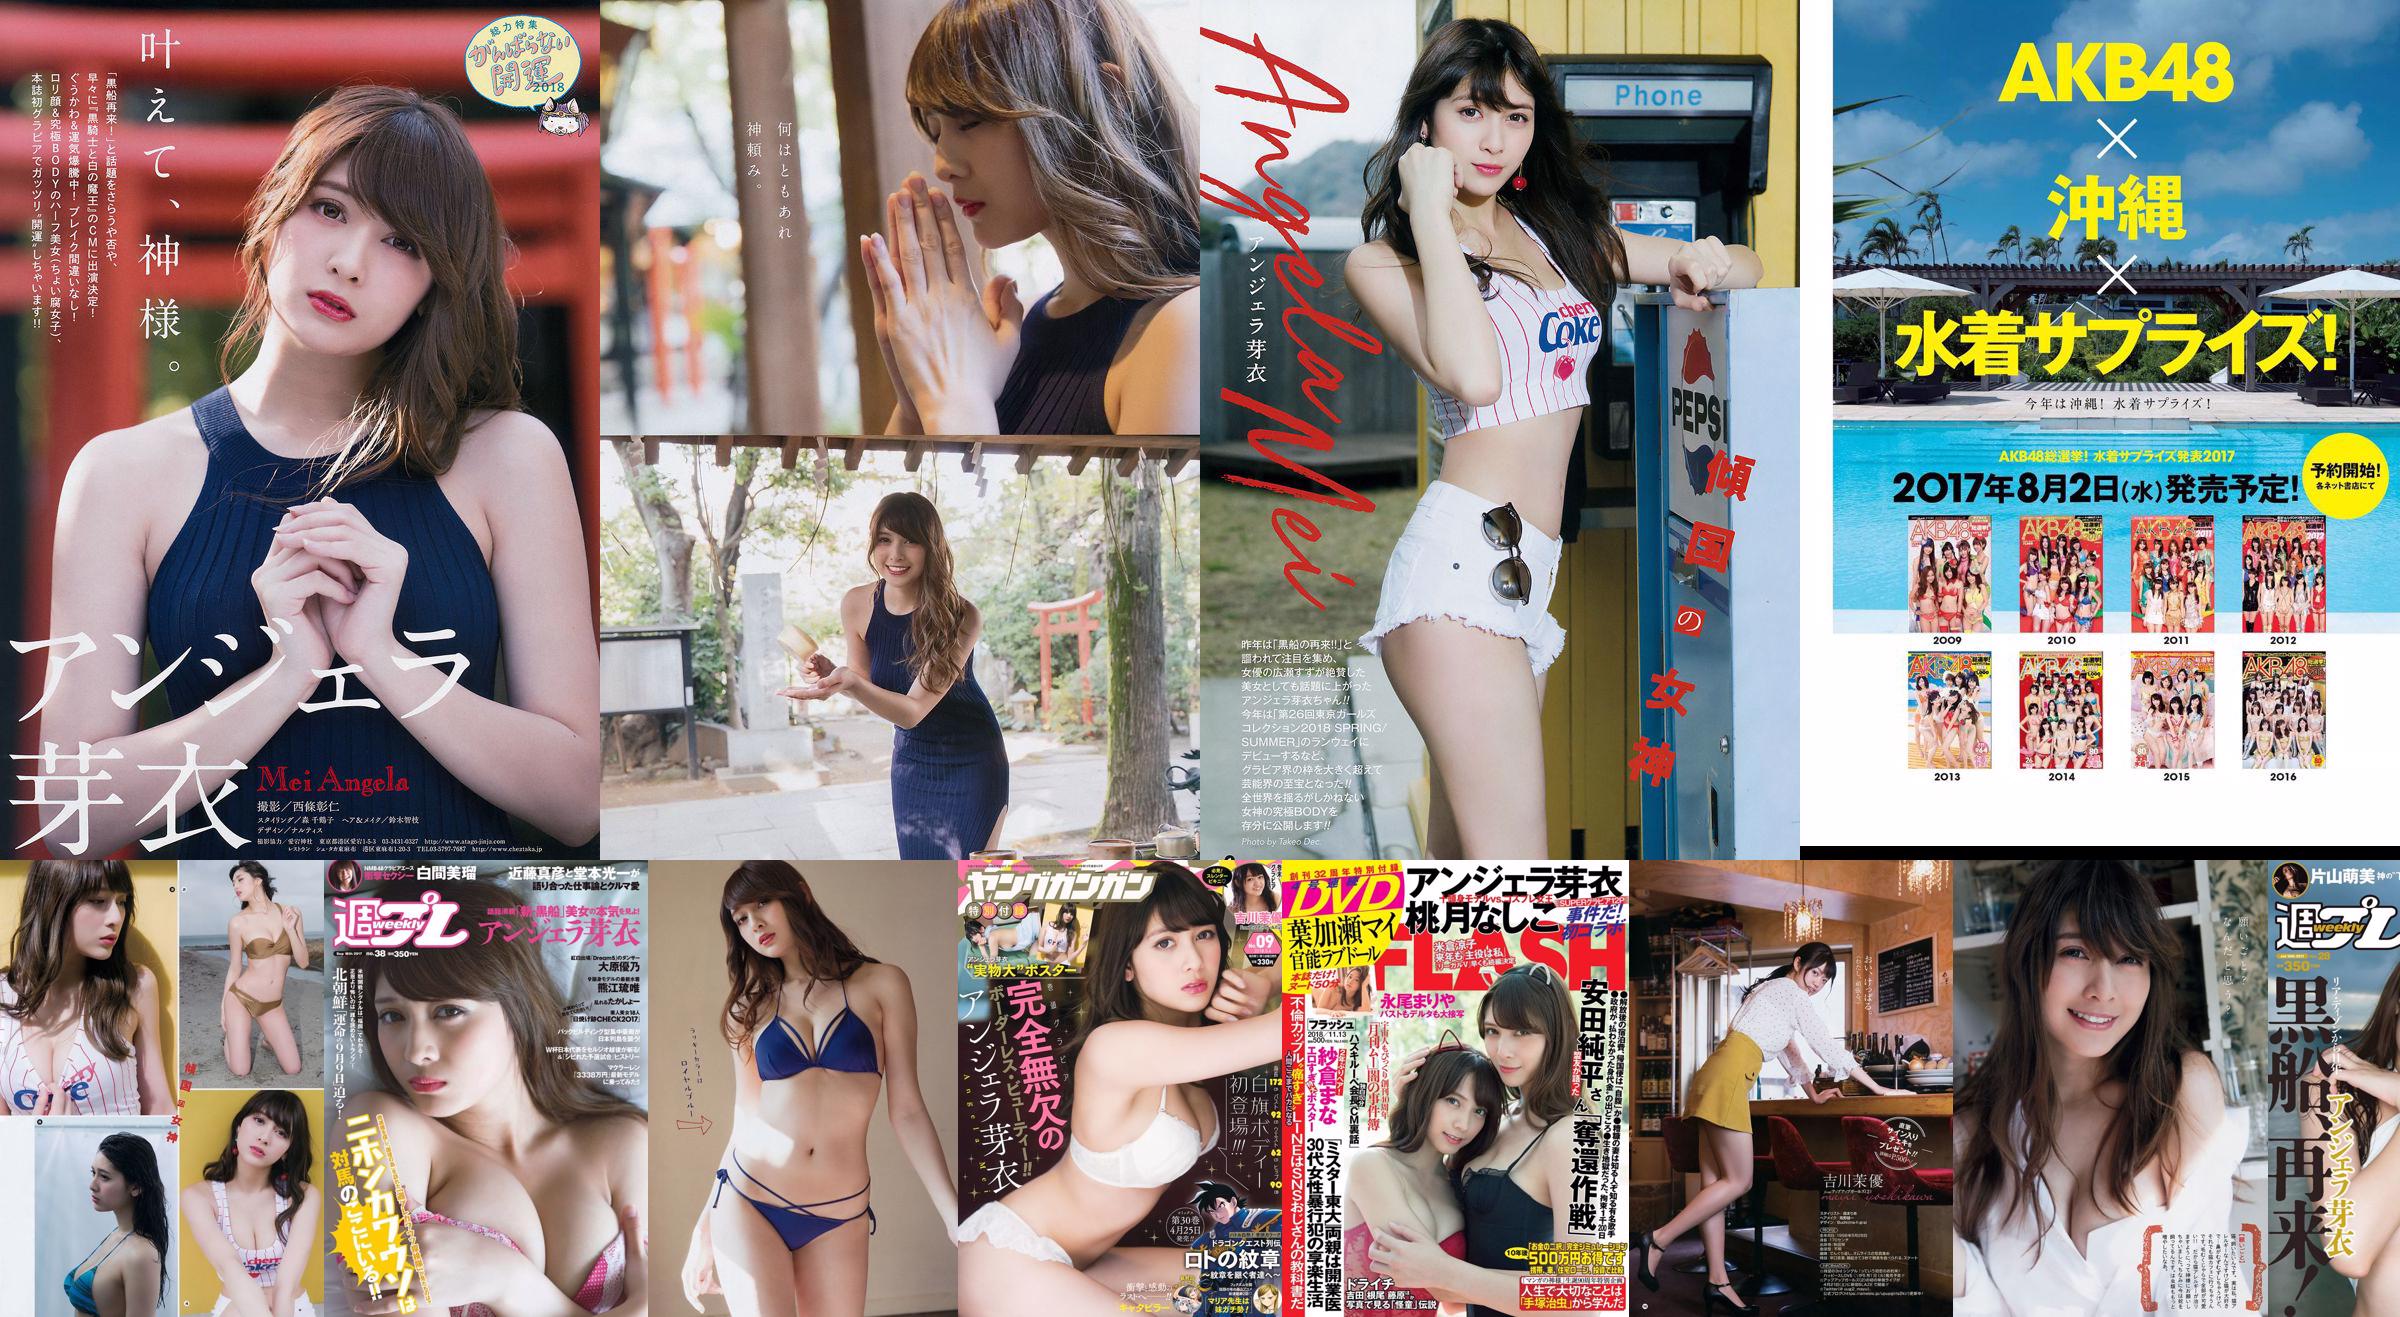 Angela Mei Riho Abiru Yuuna Suzuki Yuno Ohara Moemi Katayama Ito Ohno [Weekly Playboy] 2017 No.28 Photographie No.626dca Page 1